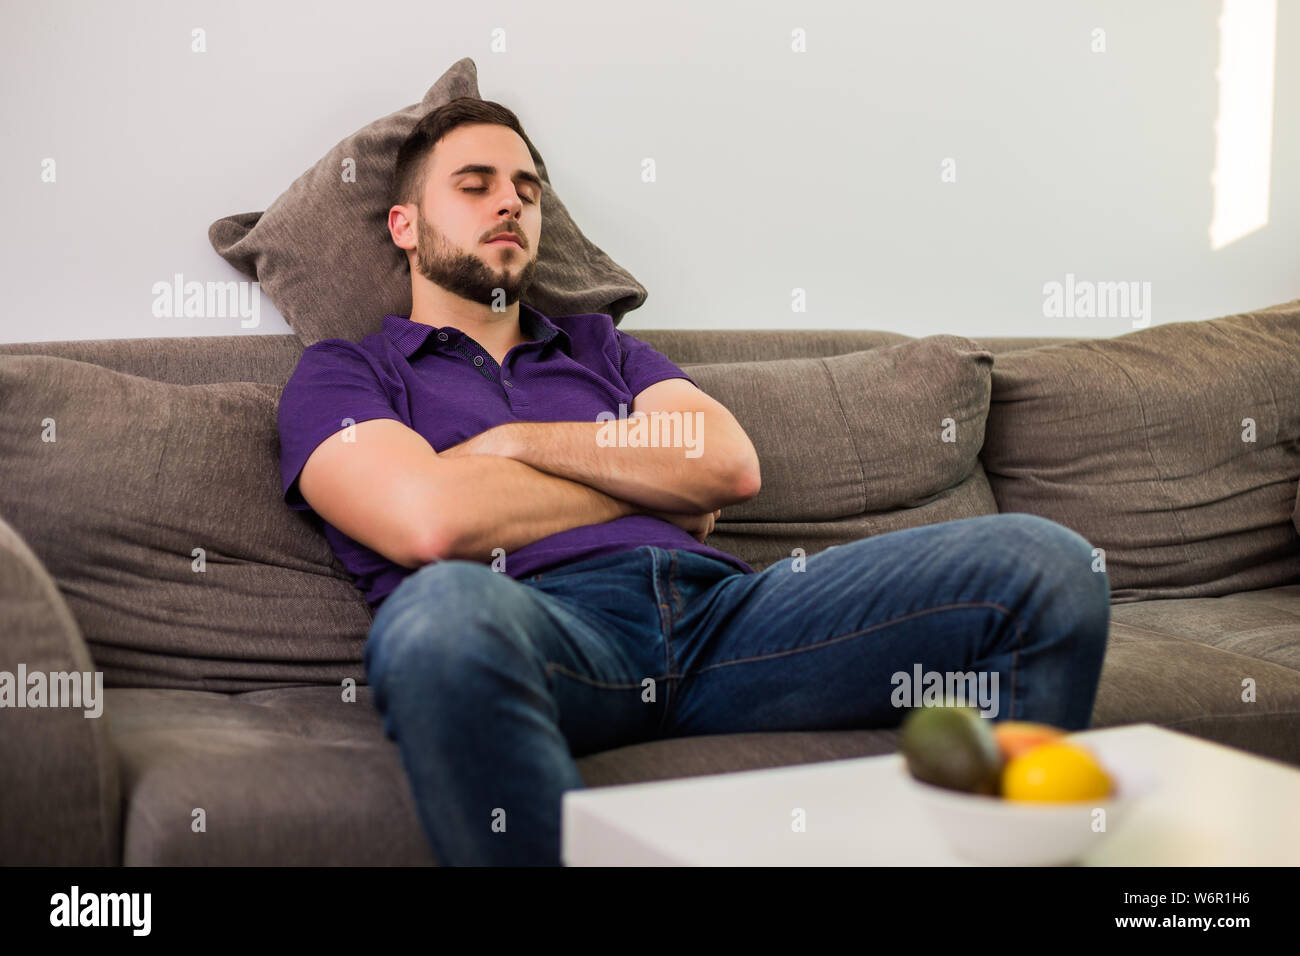 L Homme S Endormit Tandis Que Assis Sur Un Canapé Dans Son Salon Photo Stock Alamy